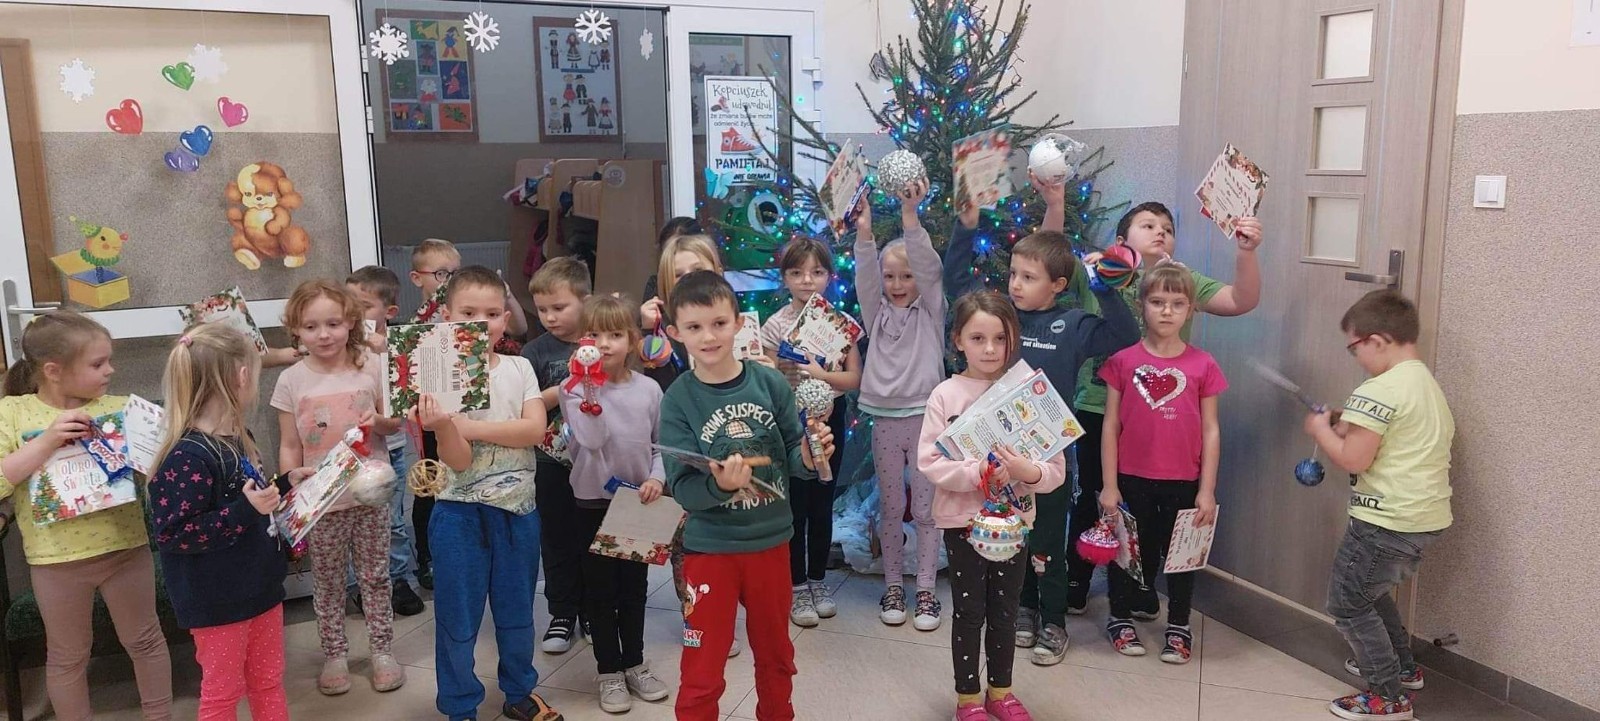 	Z okazji zbliżających się Świąt Bożego Narodzenia, na początku grudnia w naszym przedszkolu zorganizowany został konkurs dla dzieci pod nazwą:
” Najpiękniejsza ozdoba bożonarodzeniowa”. Celem konkursu było kultywowanie tradycji i folkloru związanego ze świętami Bożego Narodzenia oraz rozwijanie kreatywności i  innowacyjności poprzez pobudzenie aktywności twórczej dzieci. Patrząc na wszystkie prace jesteśmy pewne, że w wykonanie ich dzieci włożyły całe swoje serce. Niewątpliwie wykonana ozdoba świąteczna będzie wspaniałym prezentem pod choinkę, a stroik będzie piękną ozdoba wigilijnego stołu. Za trud włożony w wykonanie prac, wszystkie dzieci otrzymały wspaniałe nagrody.